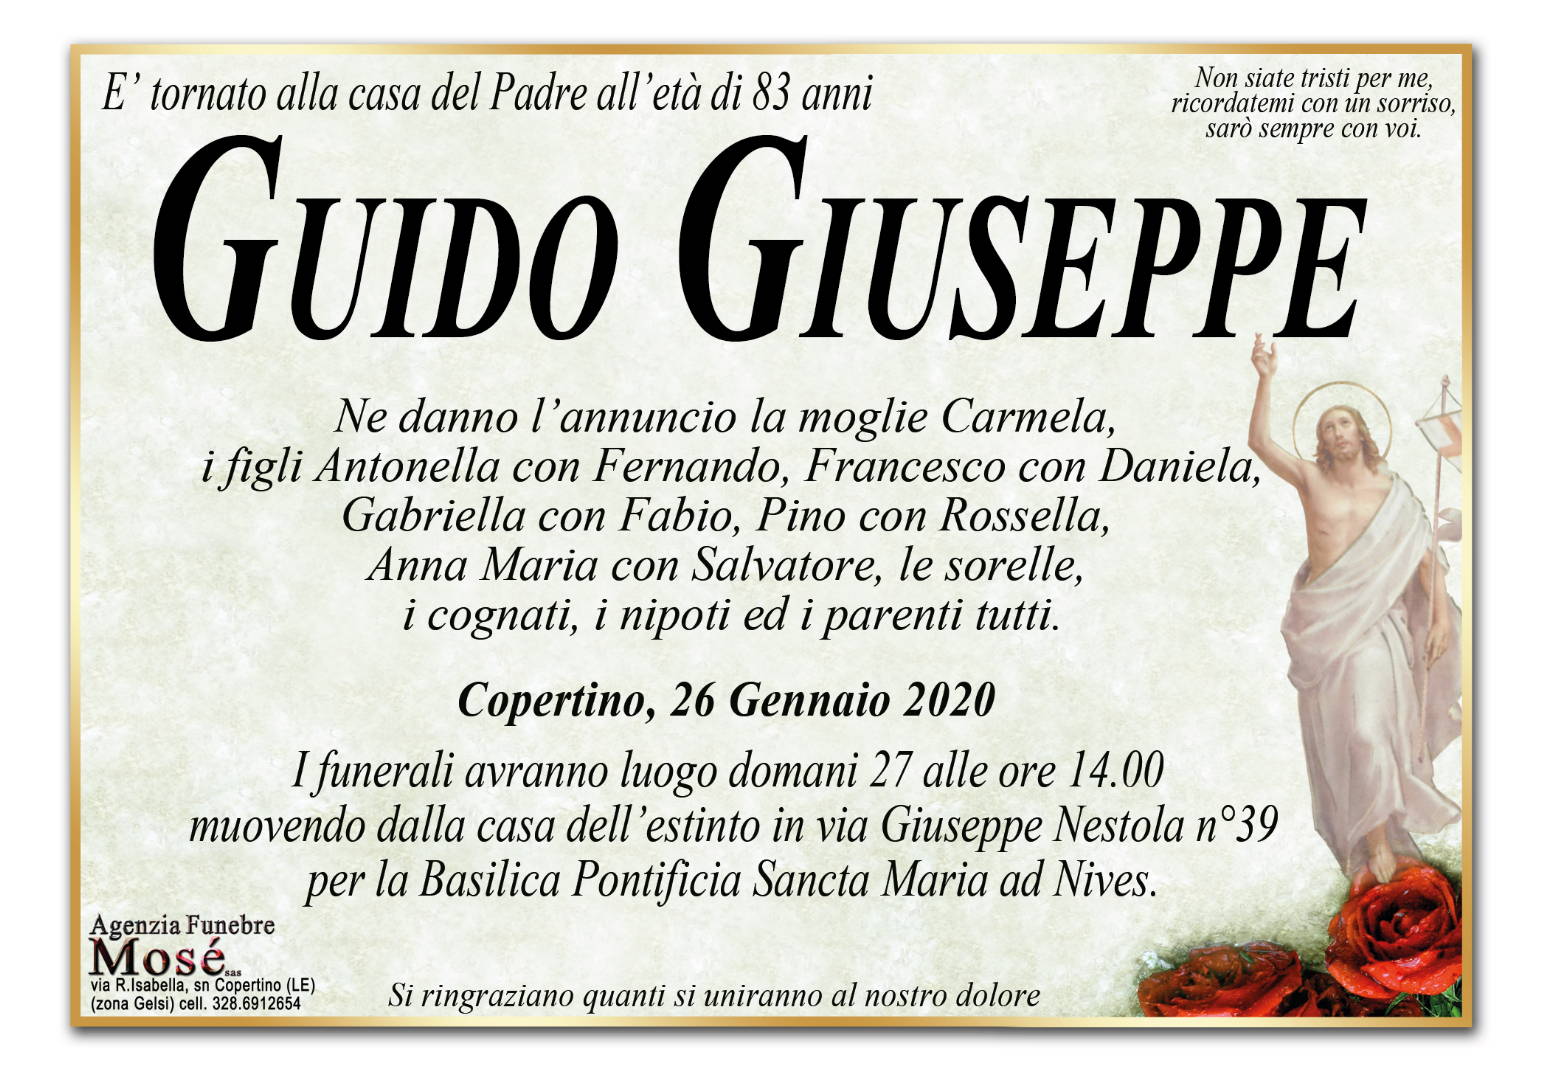 Giuseppe Guido